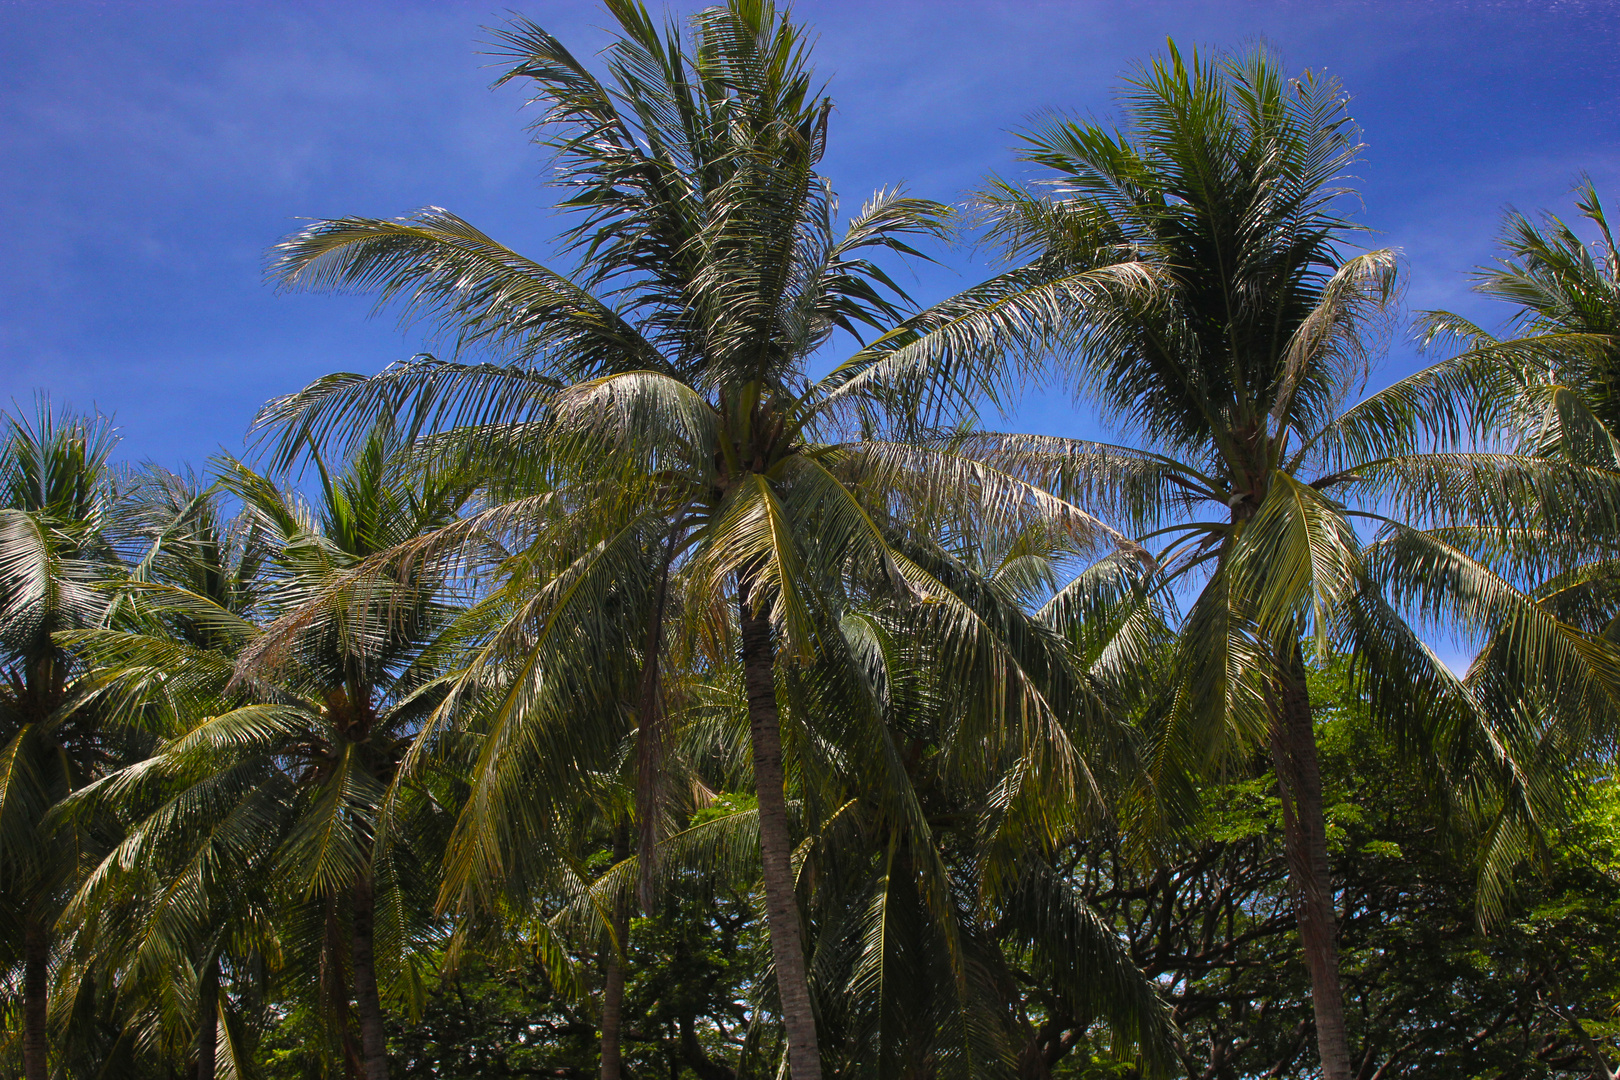 Kokospalmen (Cocos nucifera)